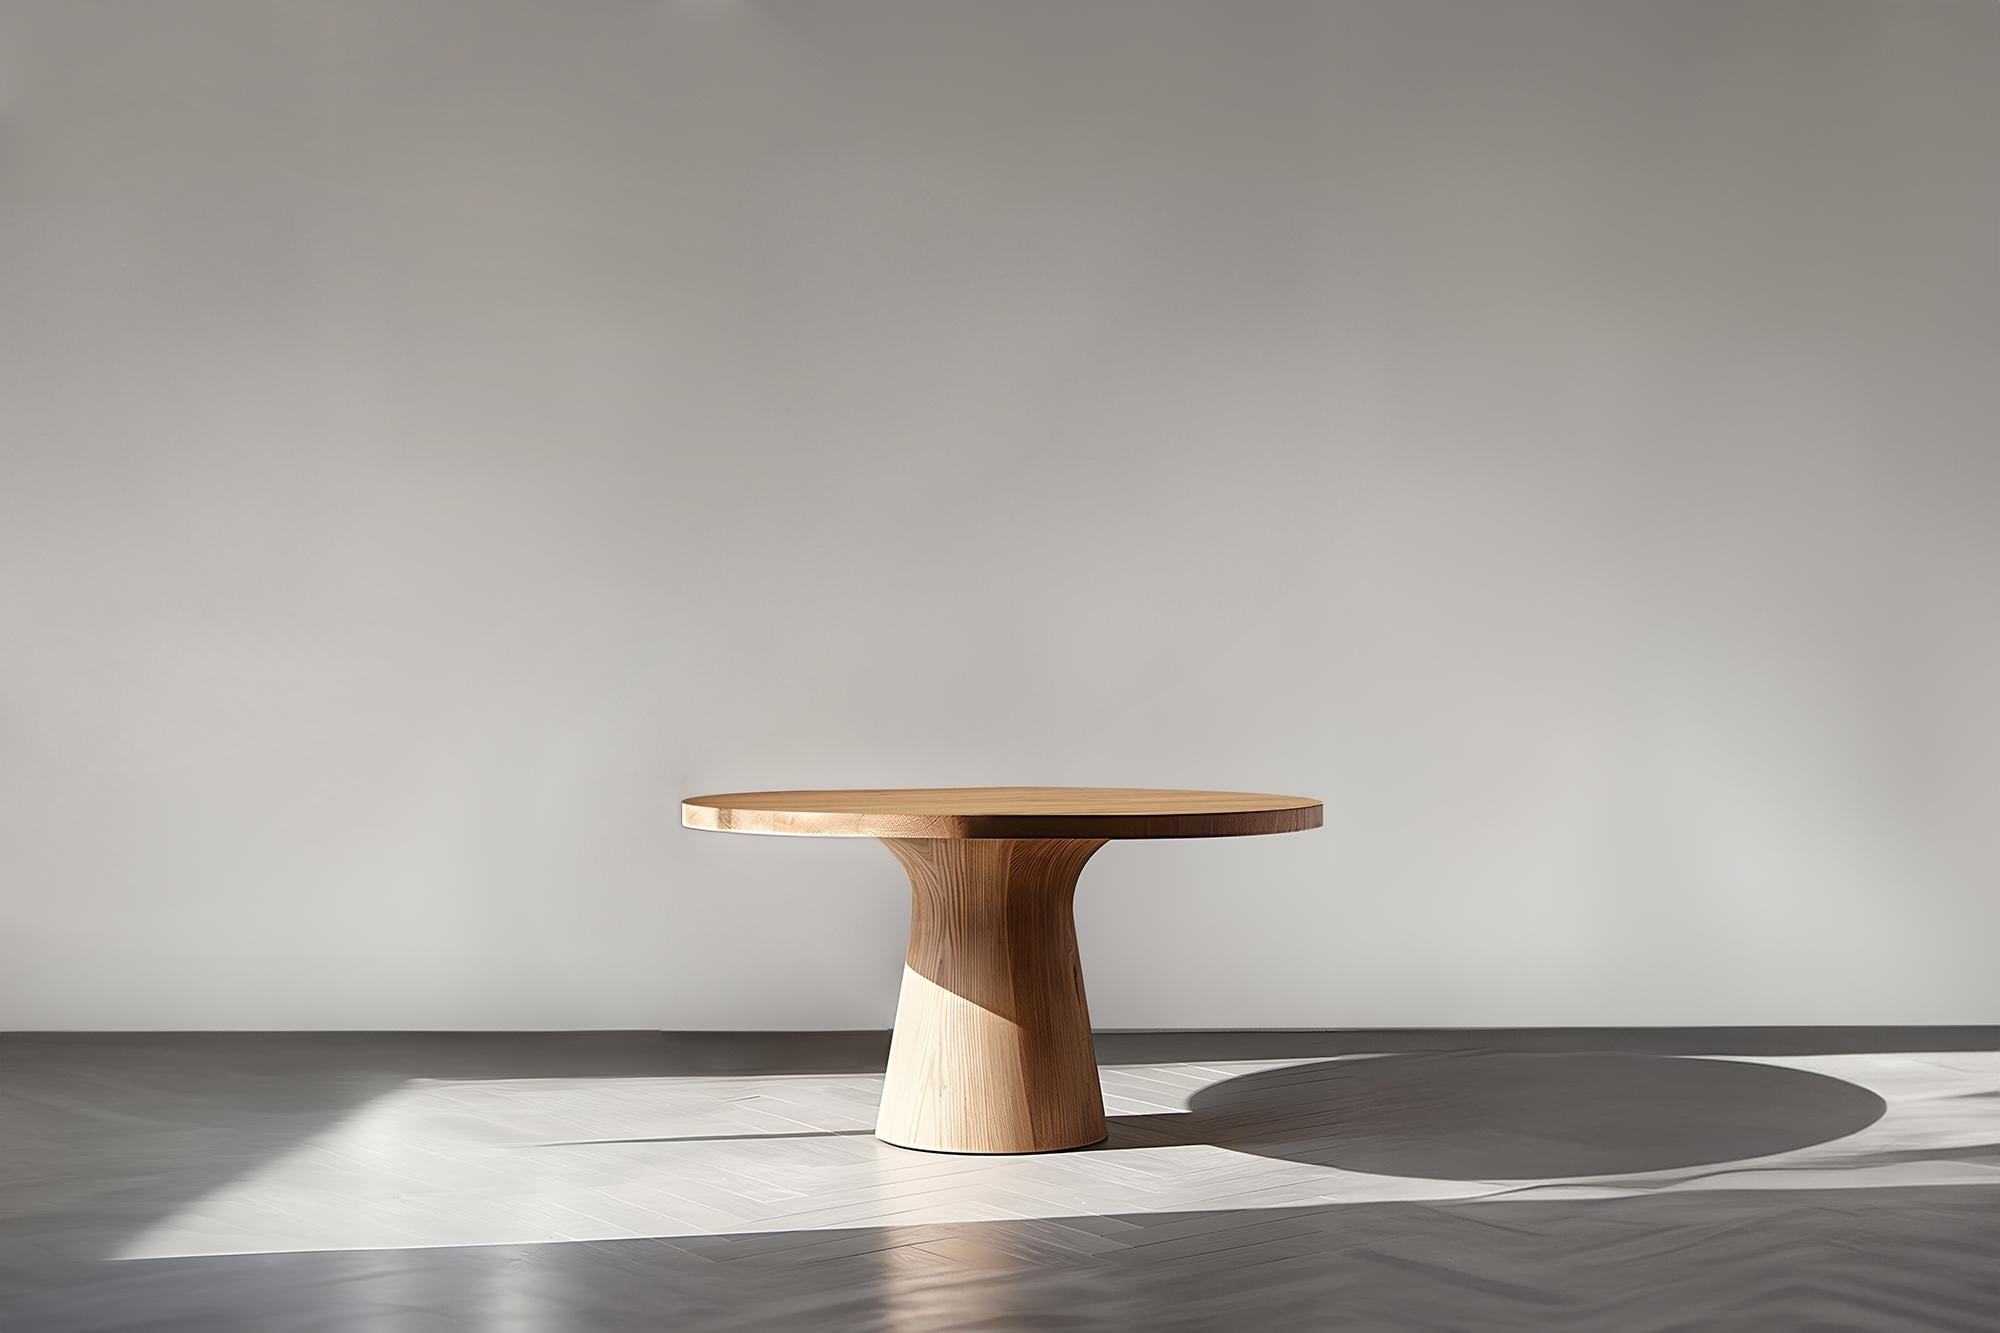 Série Socle No03 de NONO, des tables de cocktail avec une touche de bois

--

Voici la 